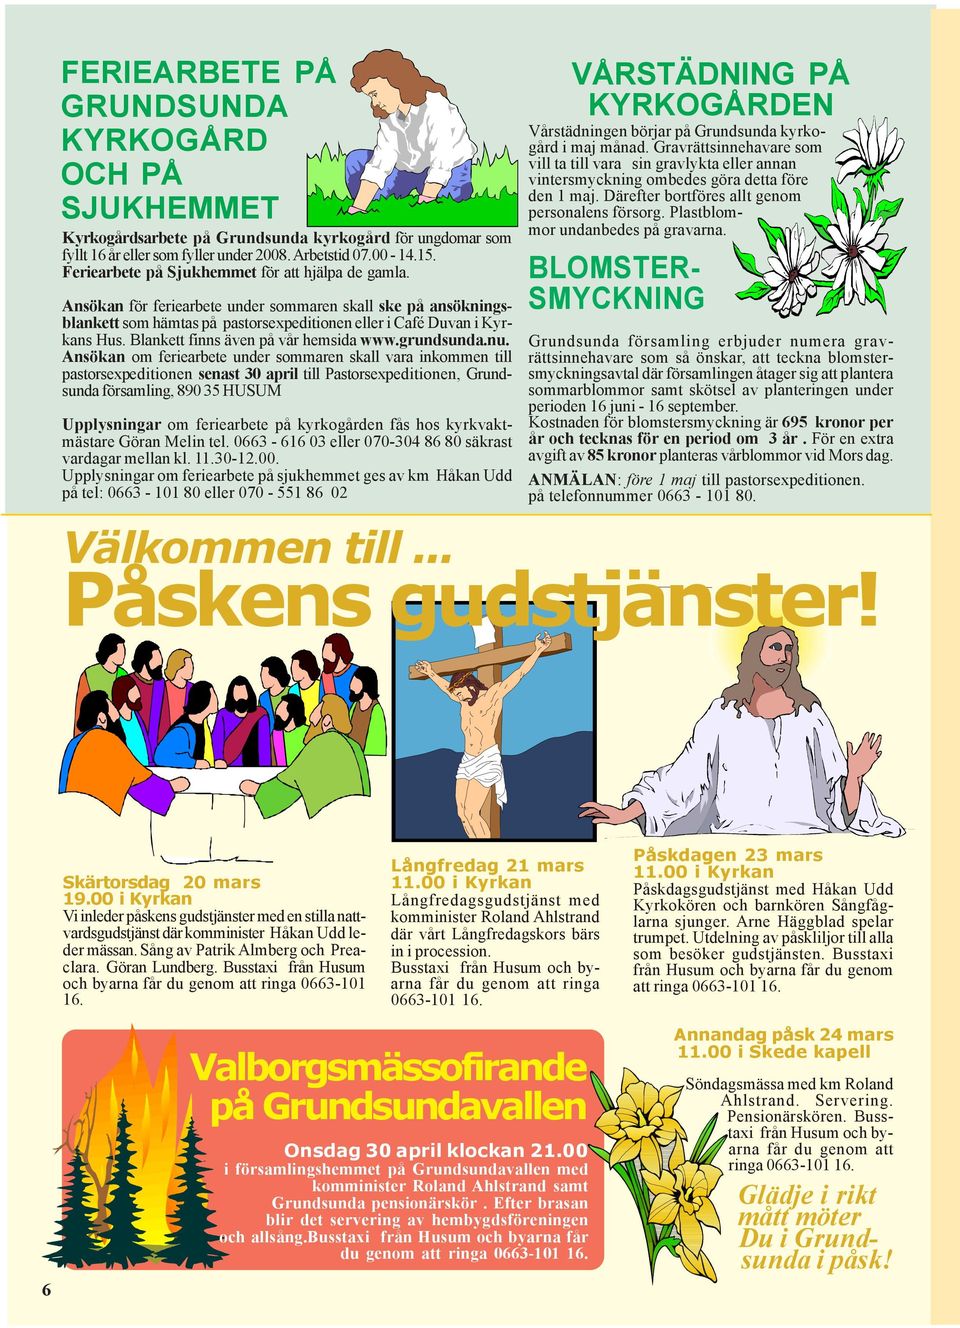 Blankett finns även på vår hemsida www.grundsunda.nu.